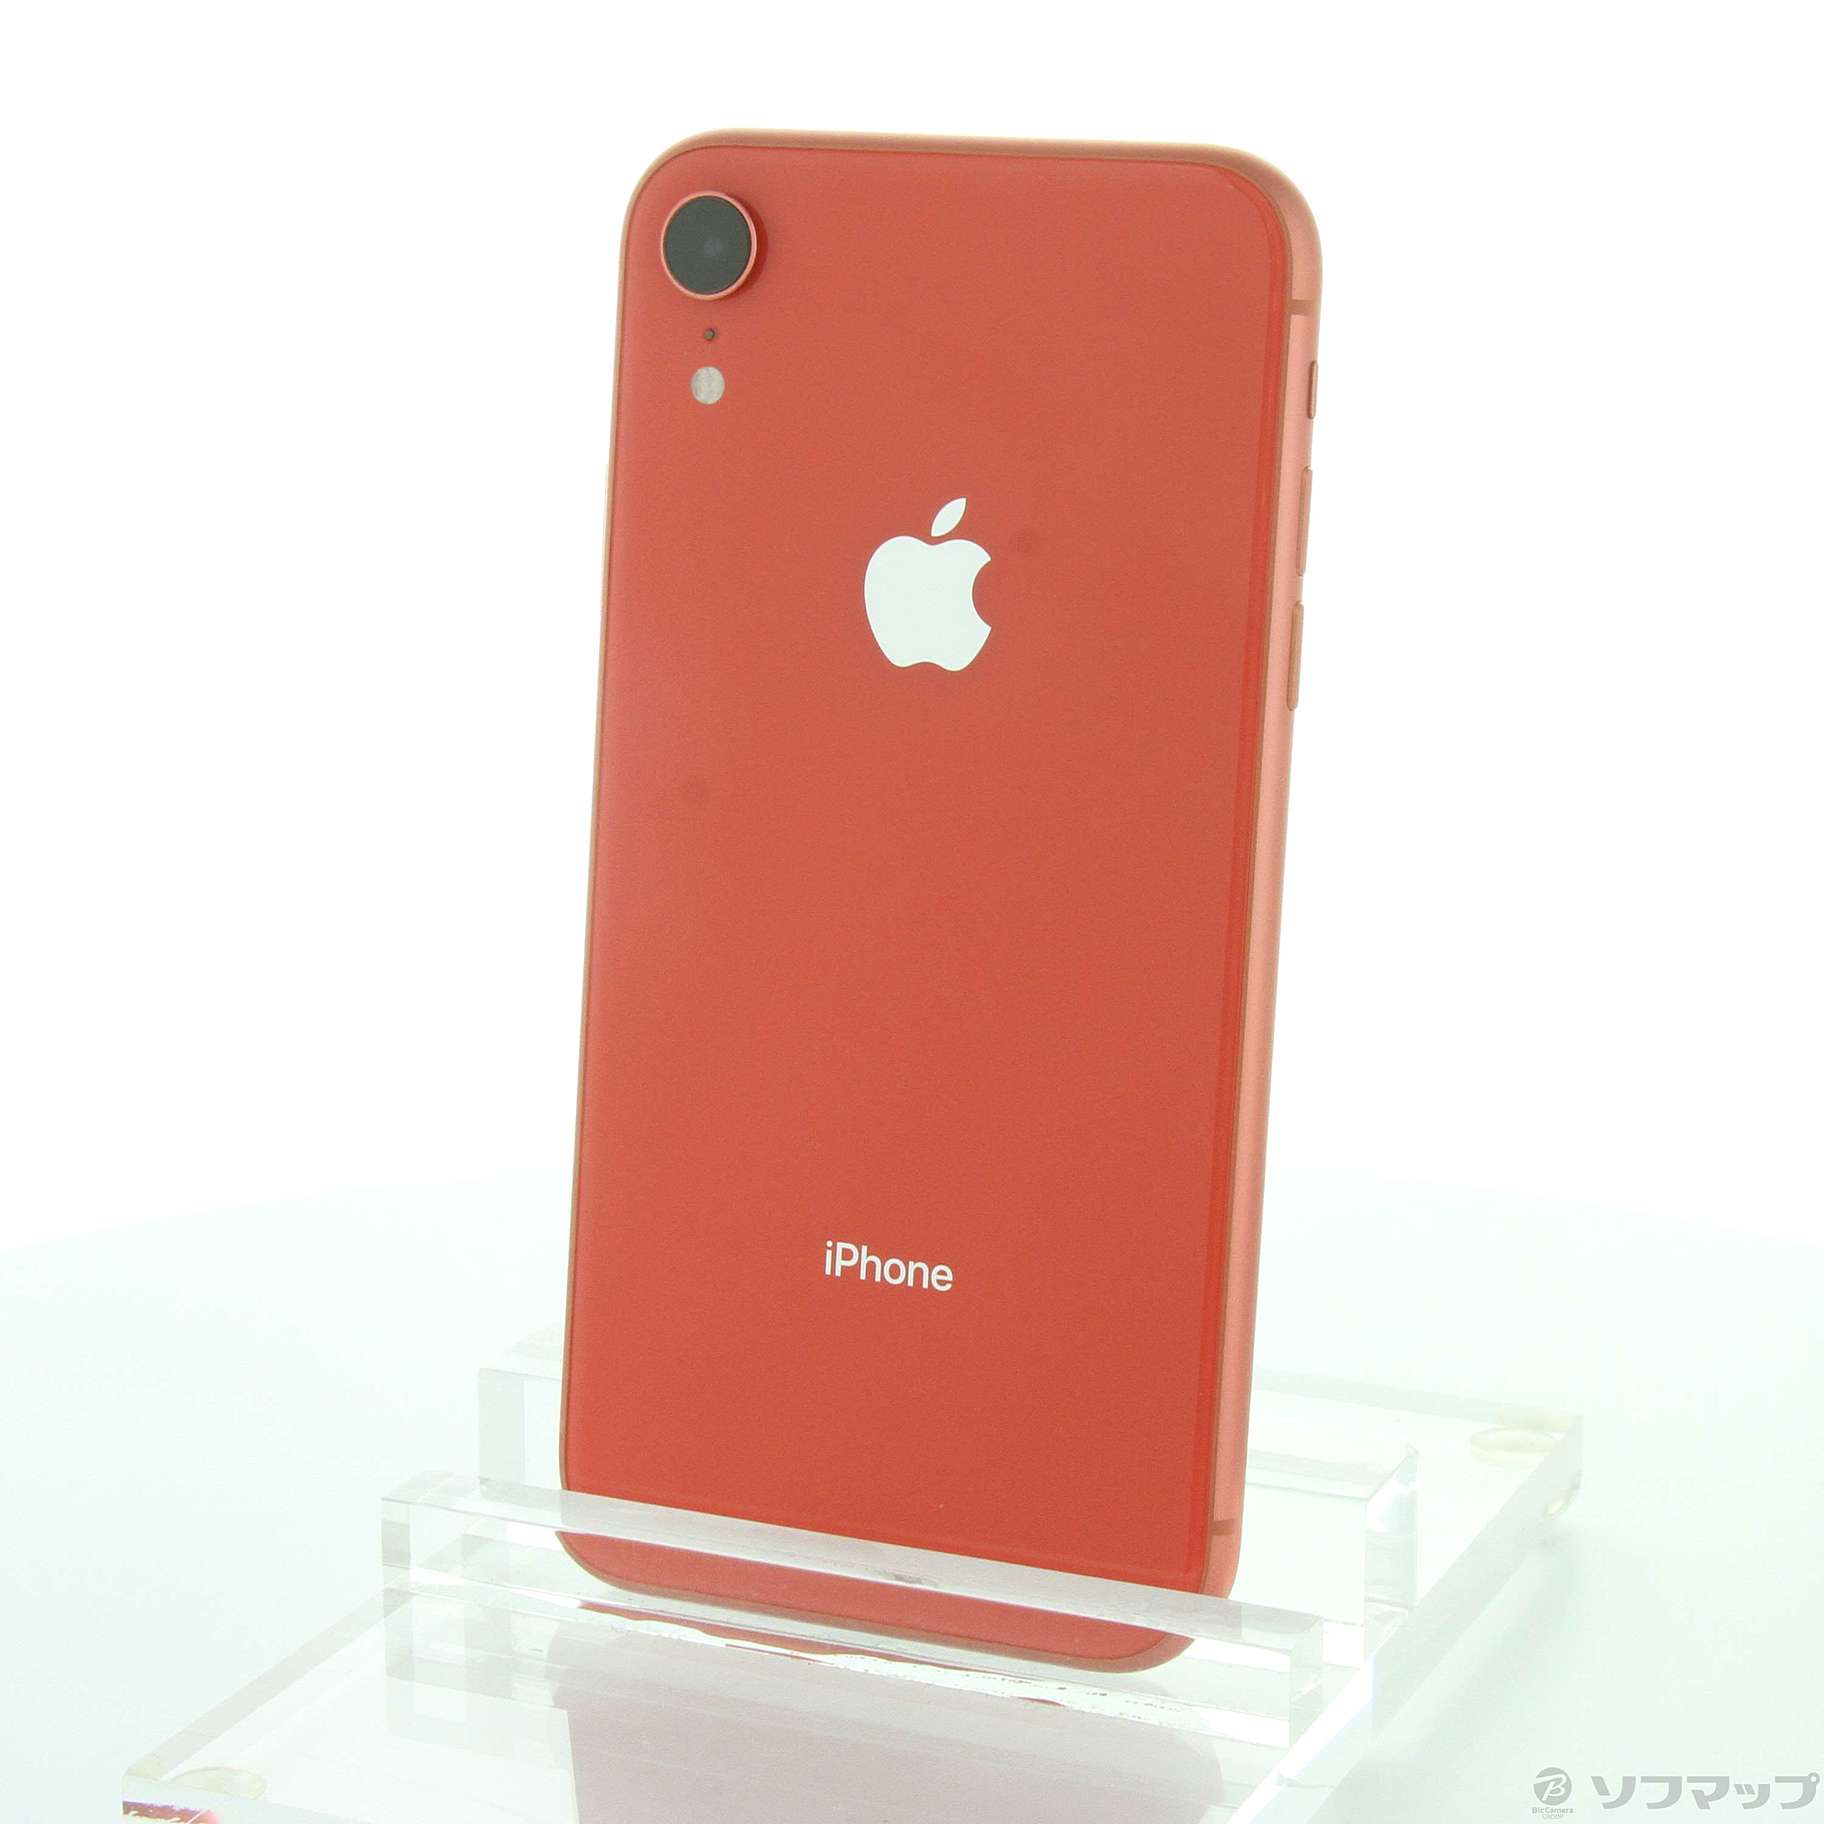 【爆買い新作】iPhoneXR 128GB coral バッテリー最大容量92% スマートフォン本体